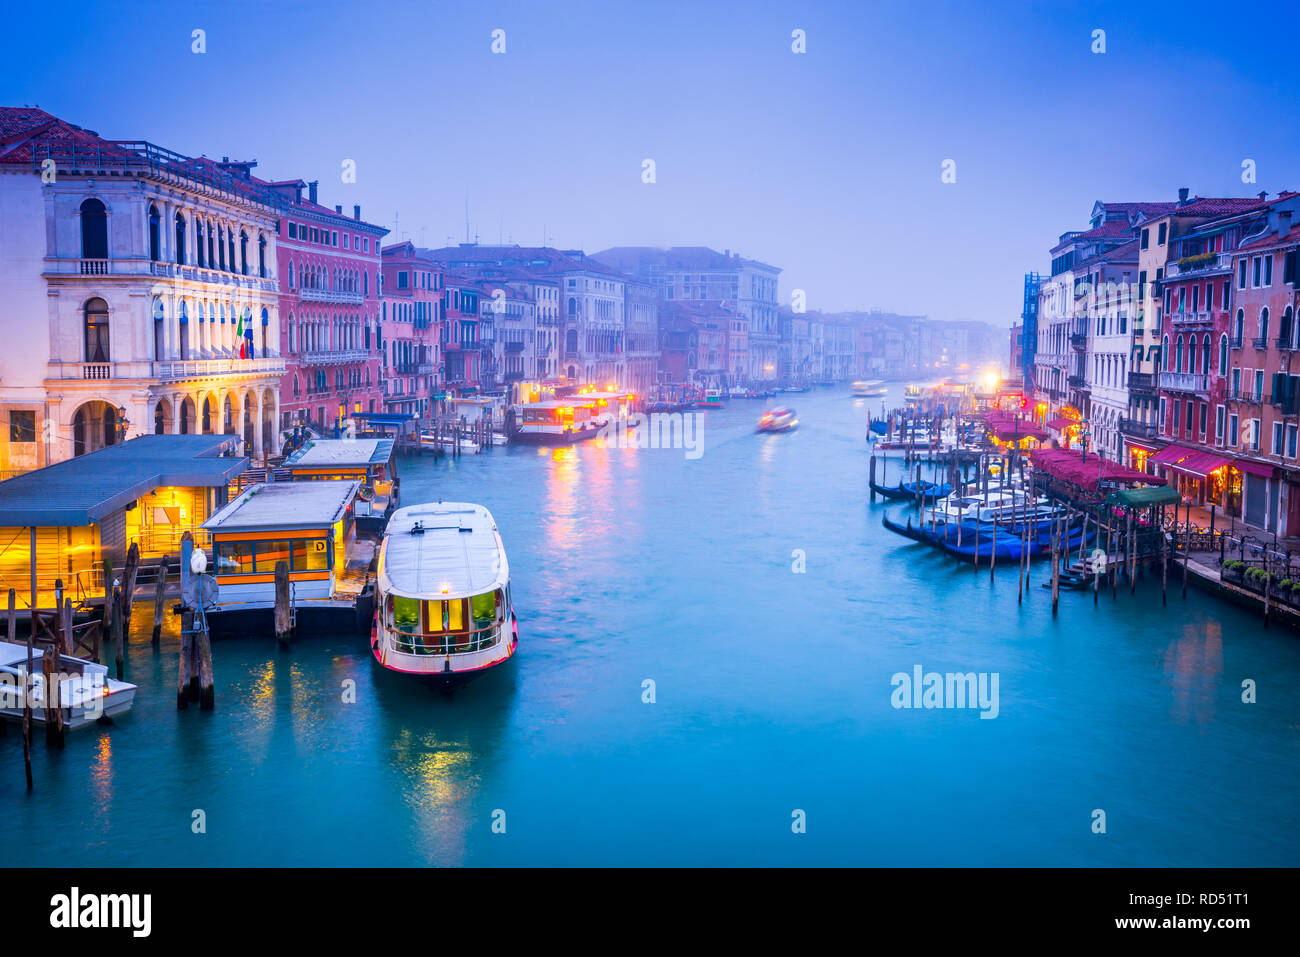 Venite, Italie - Nuit image avec Ponte di Rialto, le plus ancien pont enjambant le Grand Canal, Venise. Banque D'Images